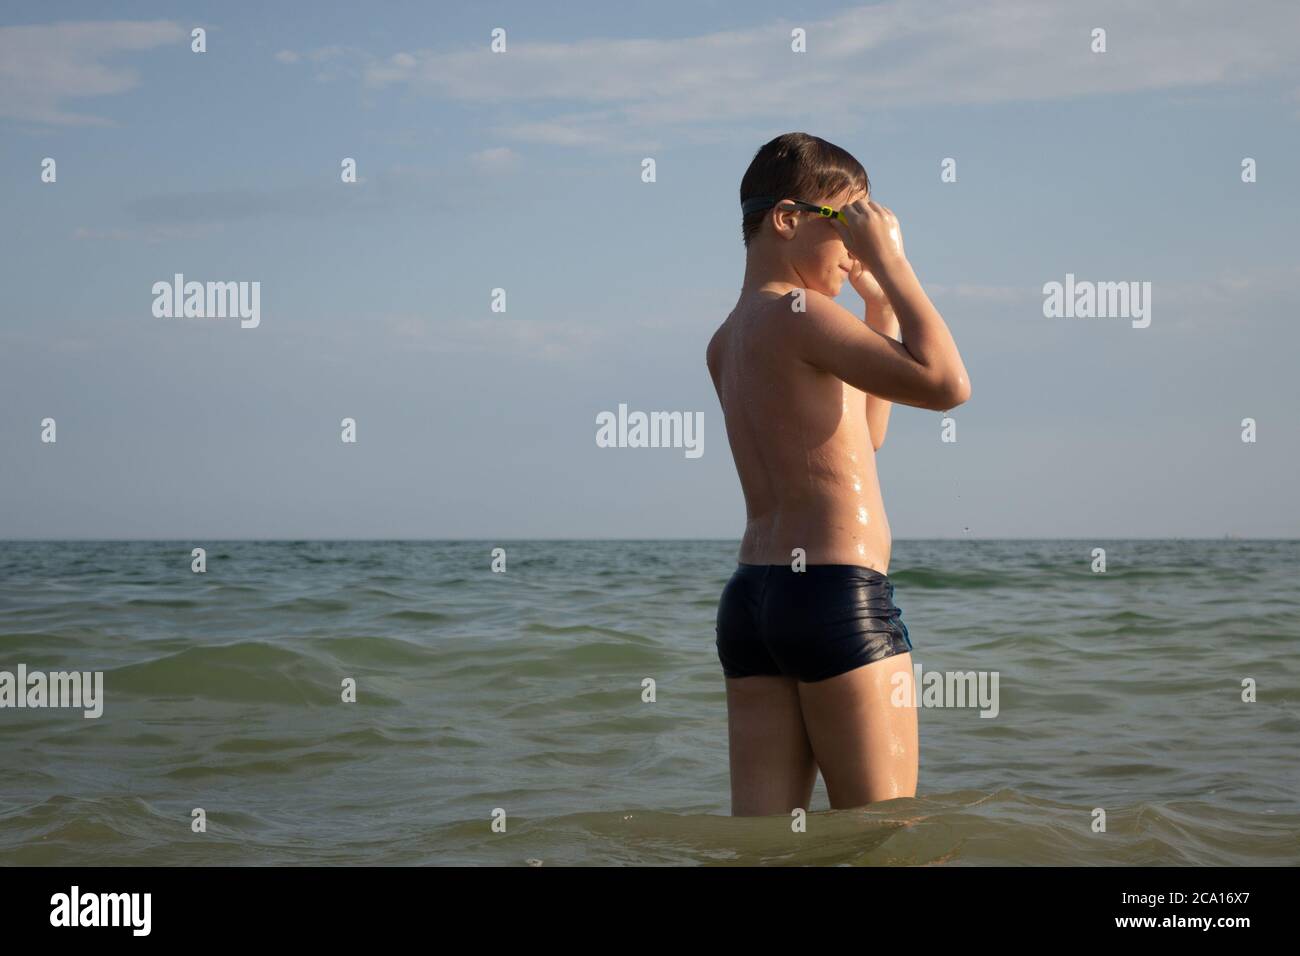 Ein 10-jähriger Junge zieht eine Schwimmbrille an und bereitet sich auf das Schwimmen im Meer vor. Stockfoto